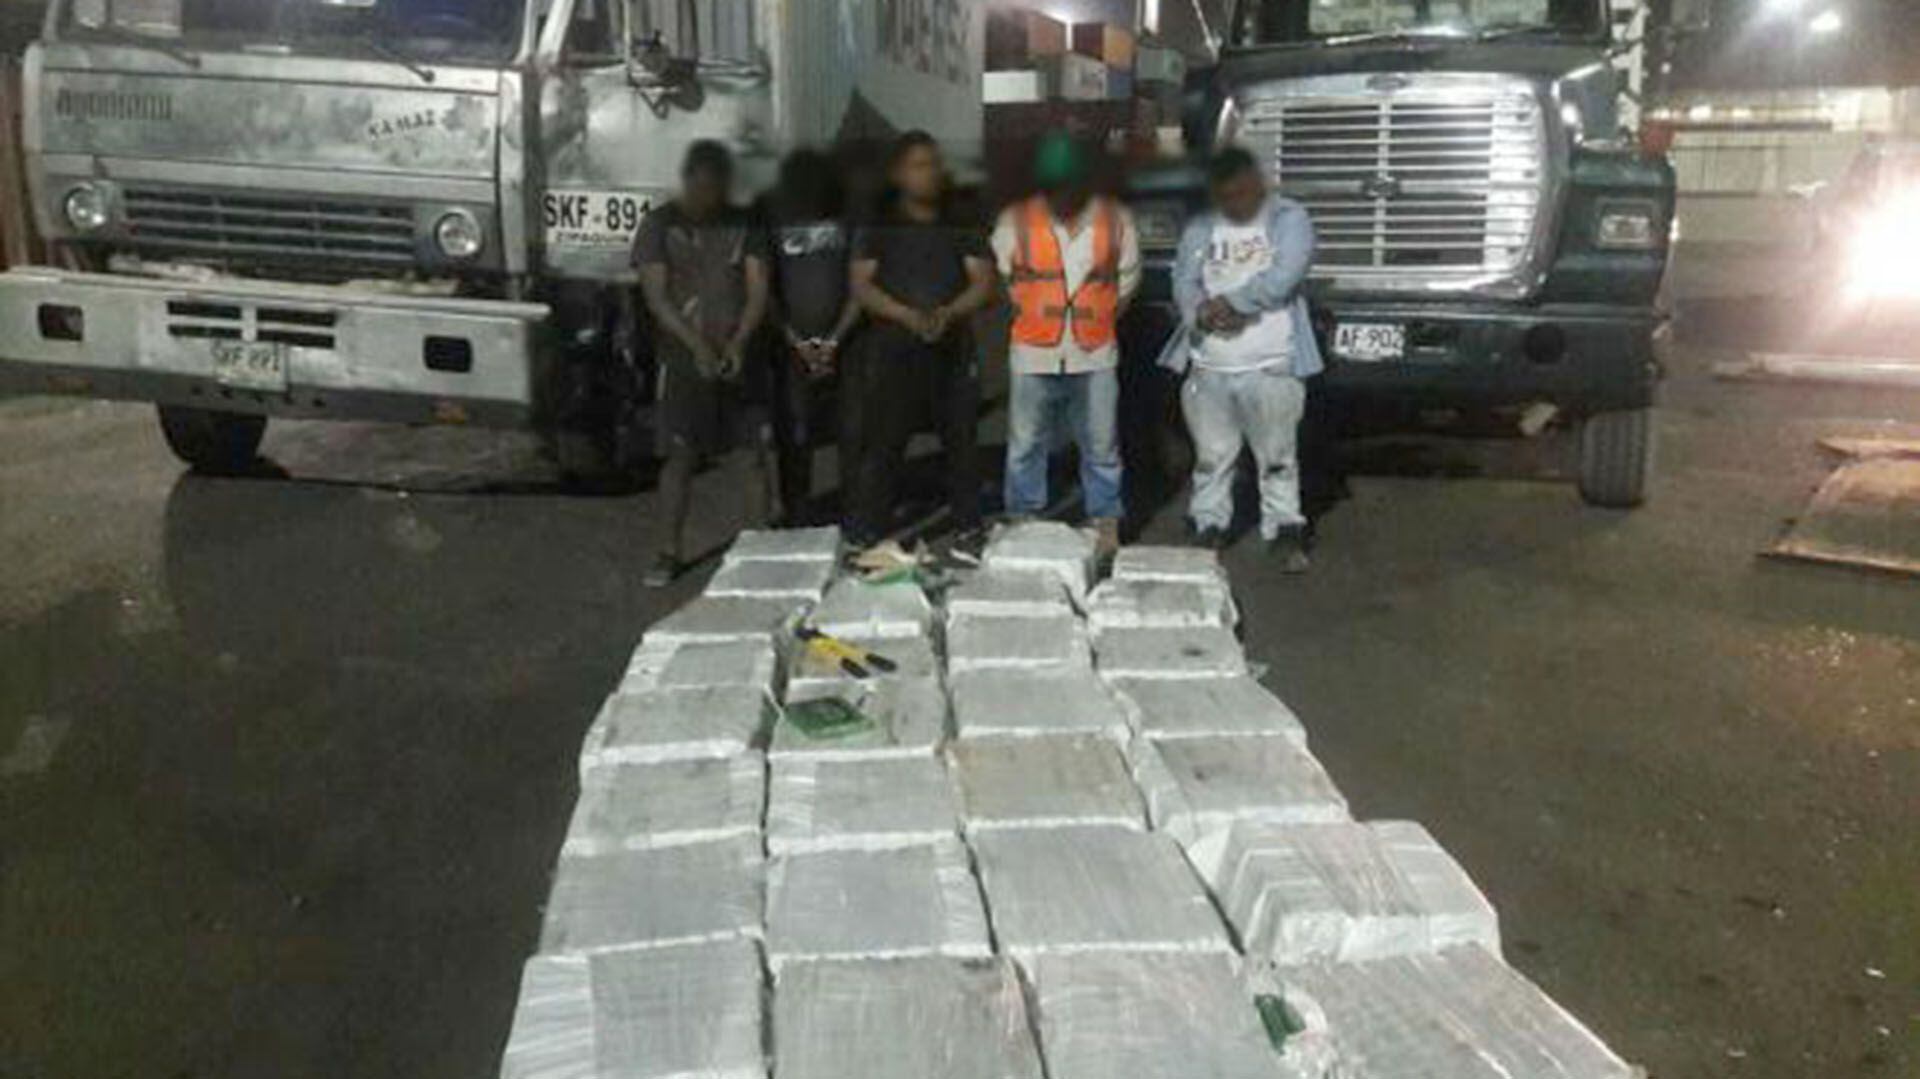 Capturados en el Puerto de Barranquilla con 700 kilos de cocaóna